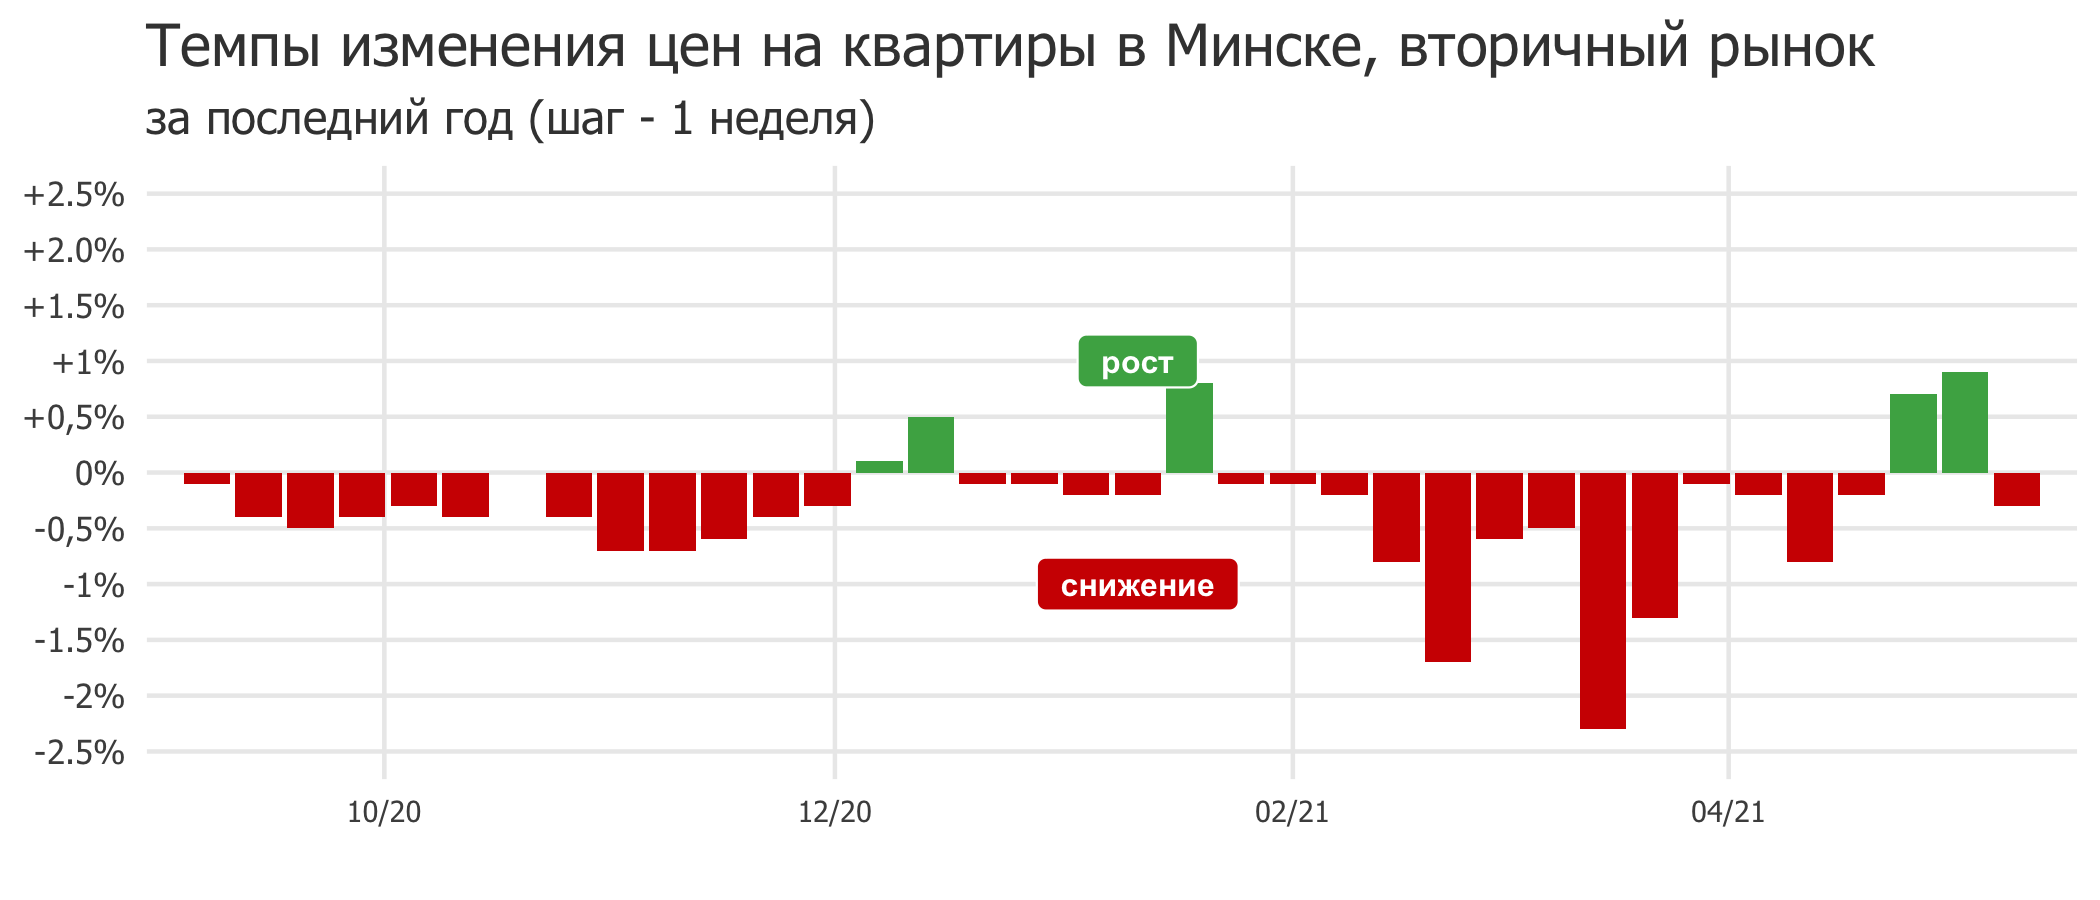 Мониторинг цен предложения квартир в Минске за 3-10 мая 2021 года